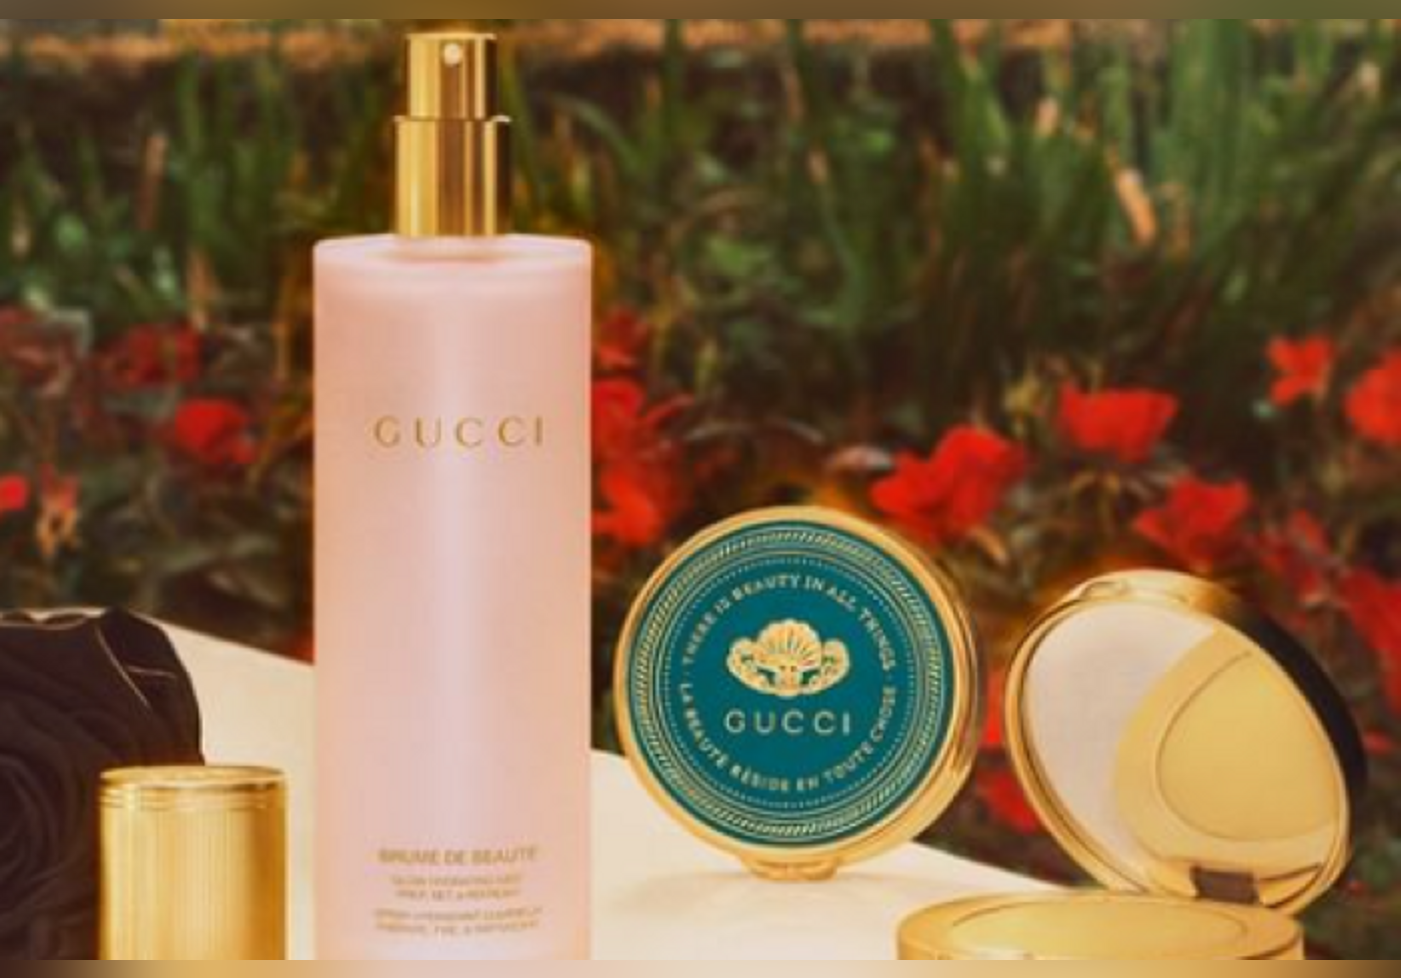 Gucci veröffentlicht seine ersten beiden Hautpflegeprodukte